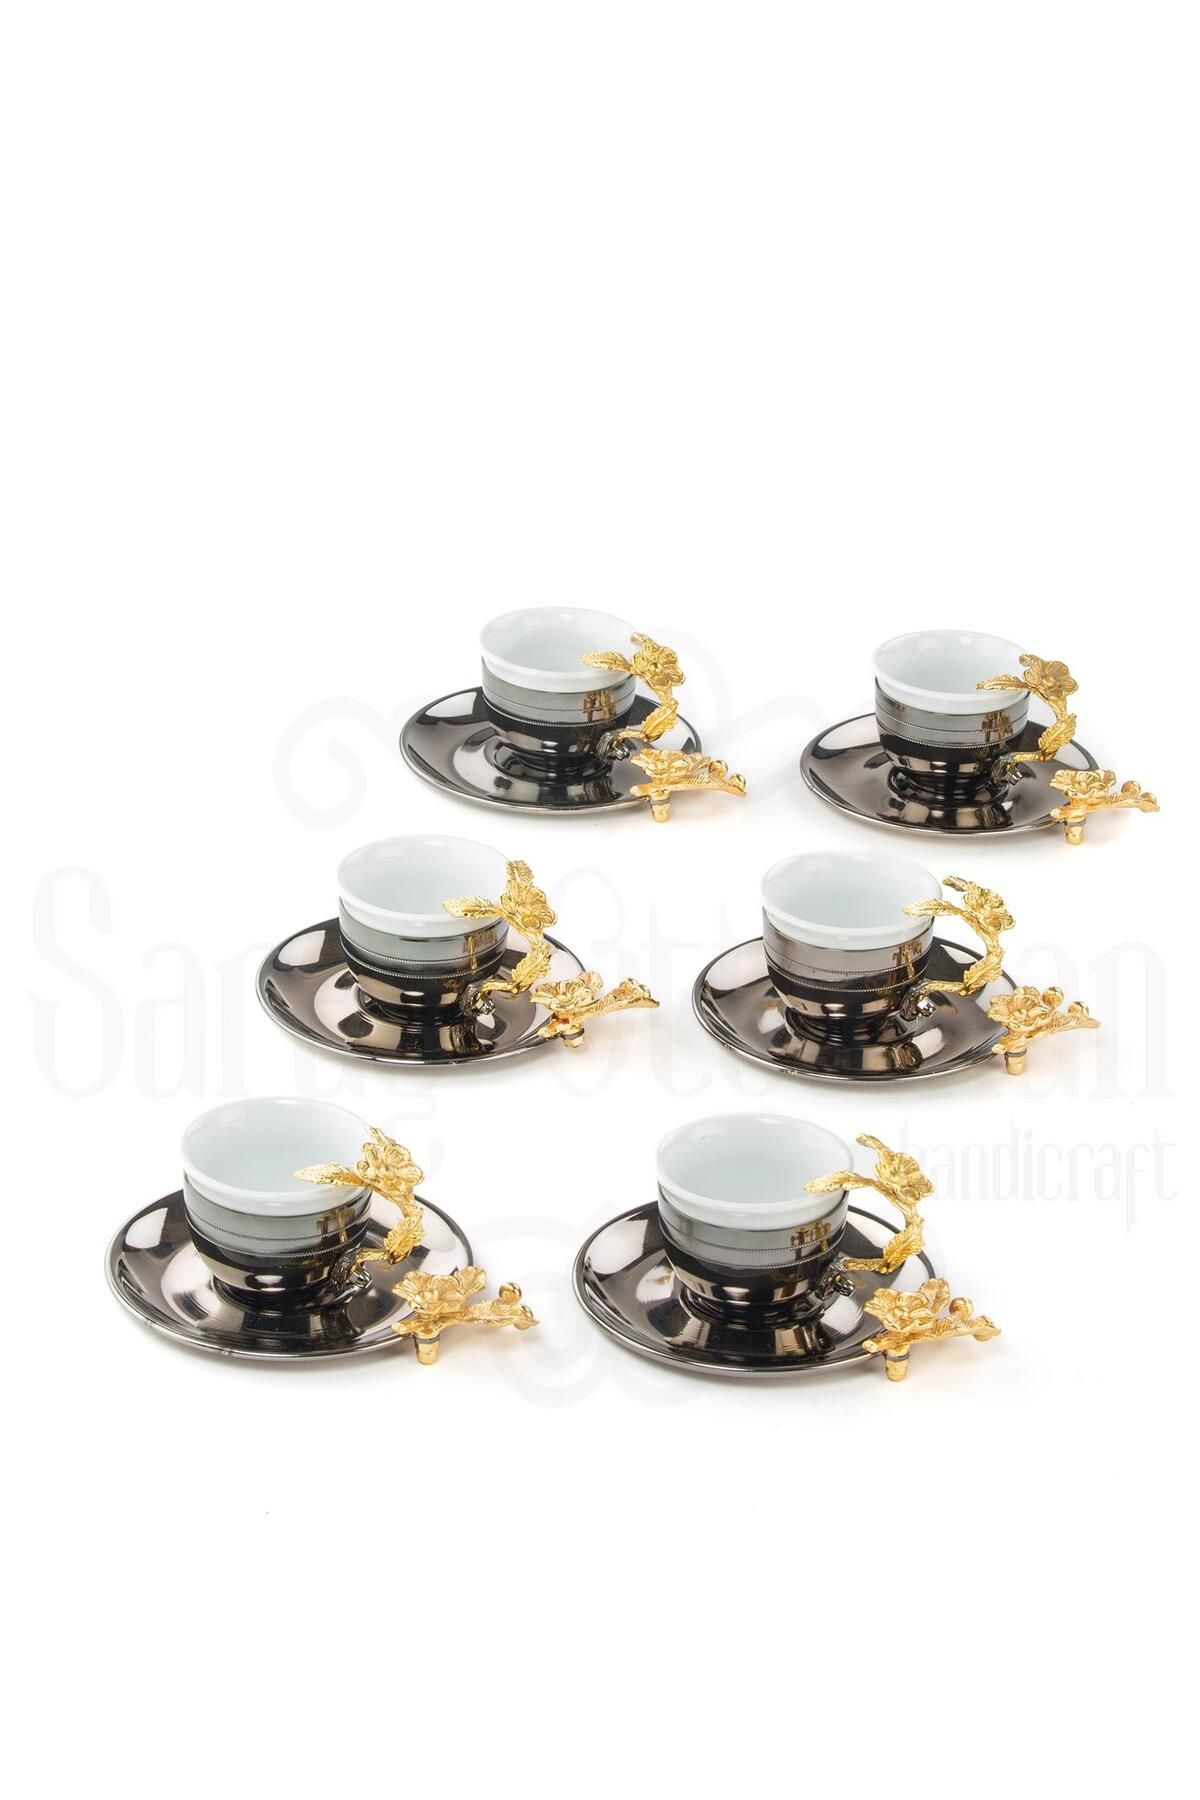 Saray Ottoman Bakır Kahve Fincanı Porselen Kahve Fincanı Altın Japon Gülü Çizgili 6'lı Kahve Fincanı Siyah